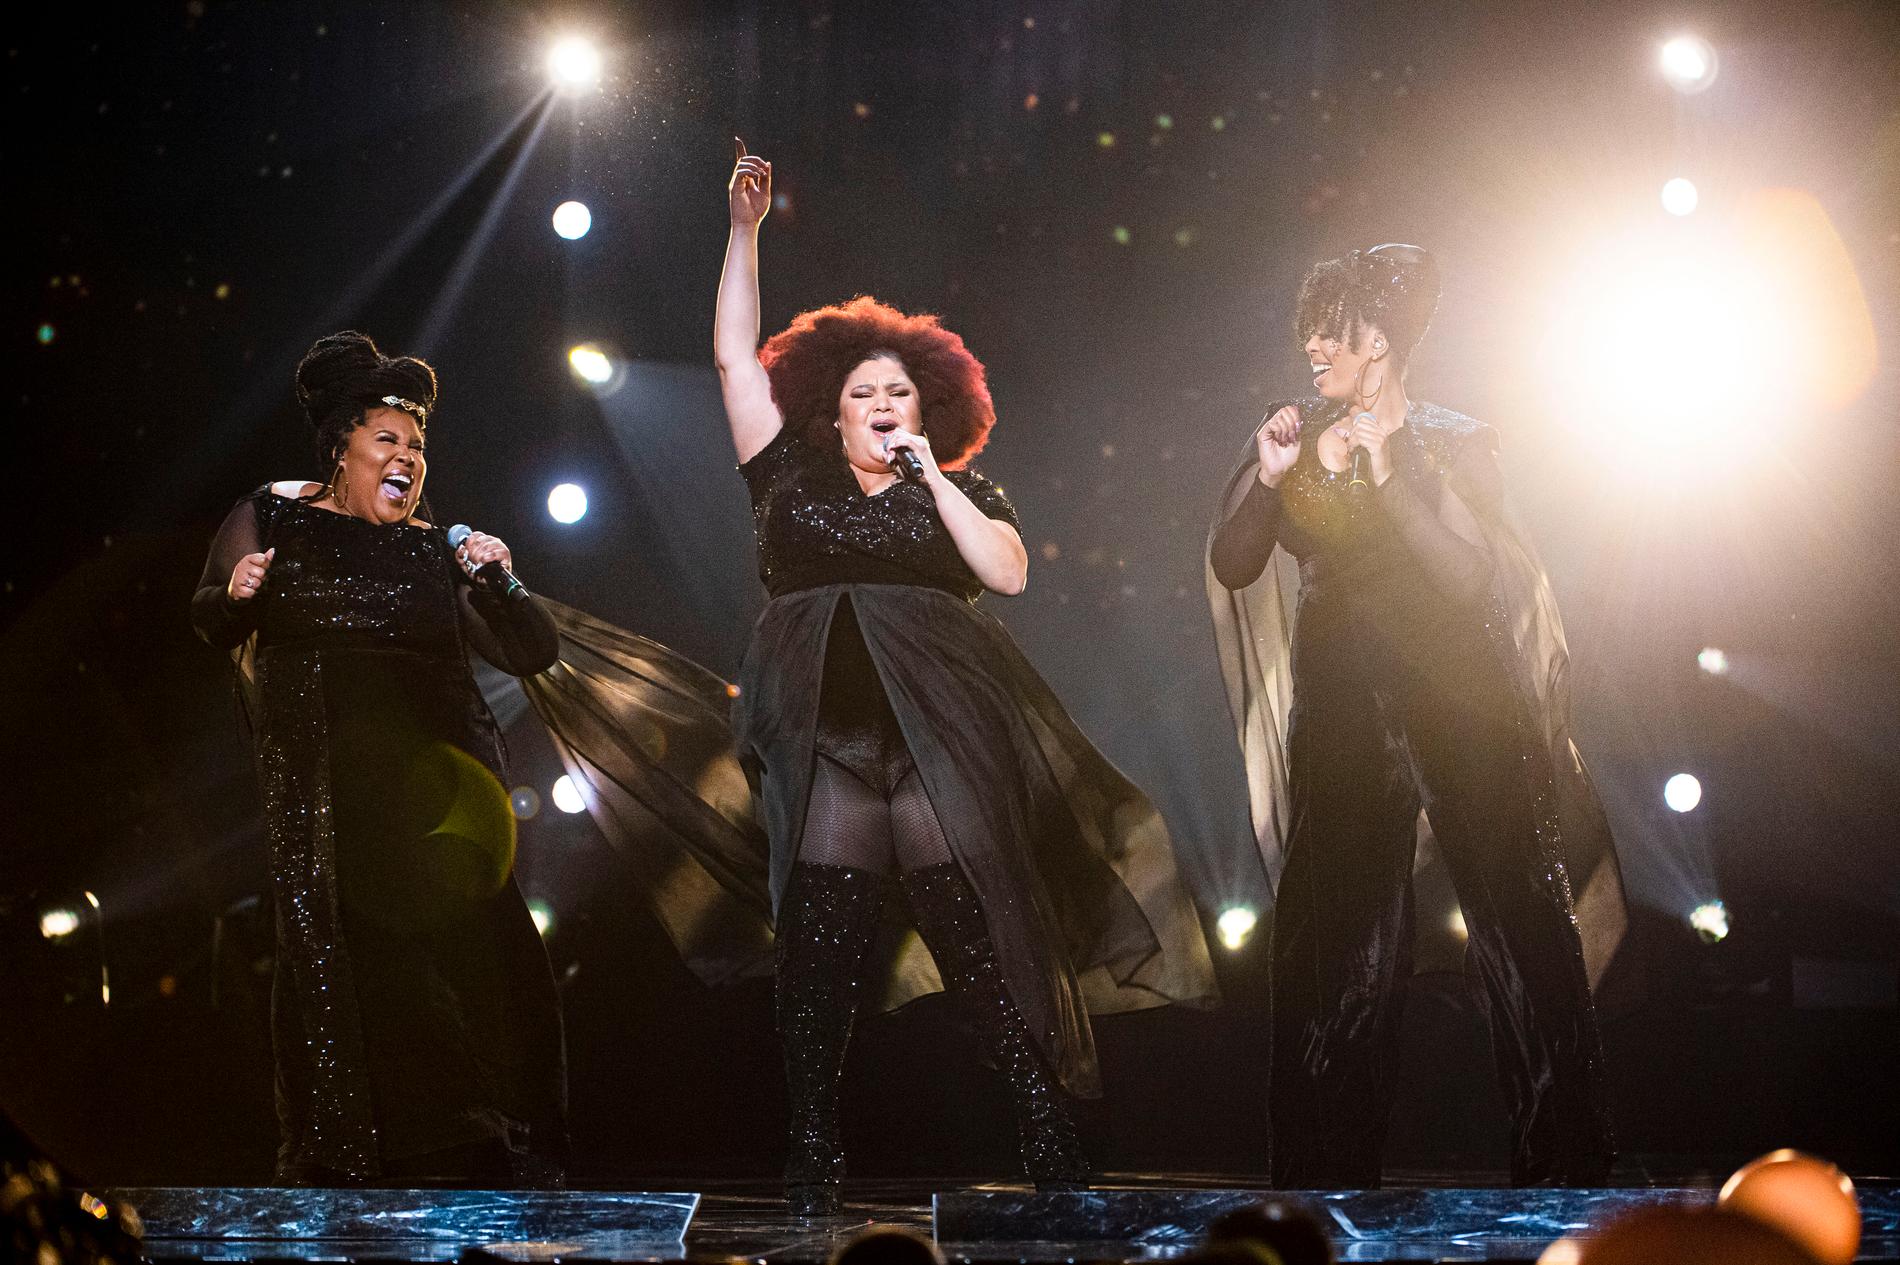 The Mamas inleder sitt nummer i samma outfits och frisyrer som de bar när de tog hem segern i Melodifestivalen 2020 med låten ”Move”.